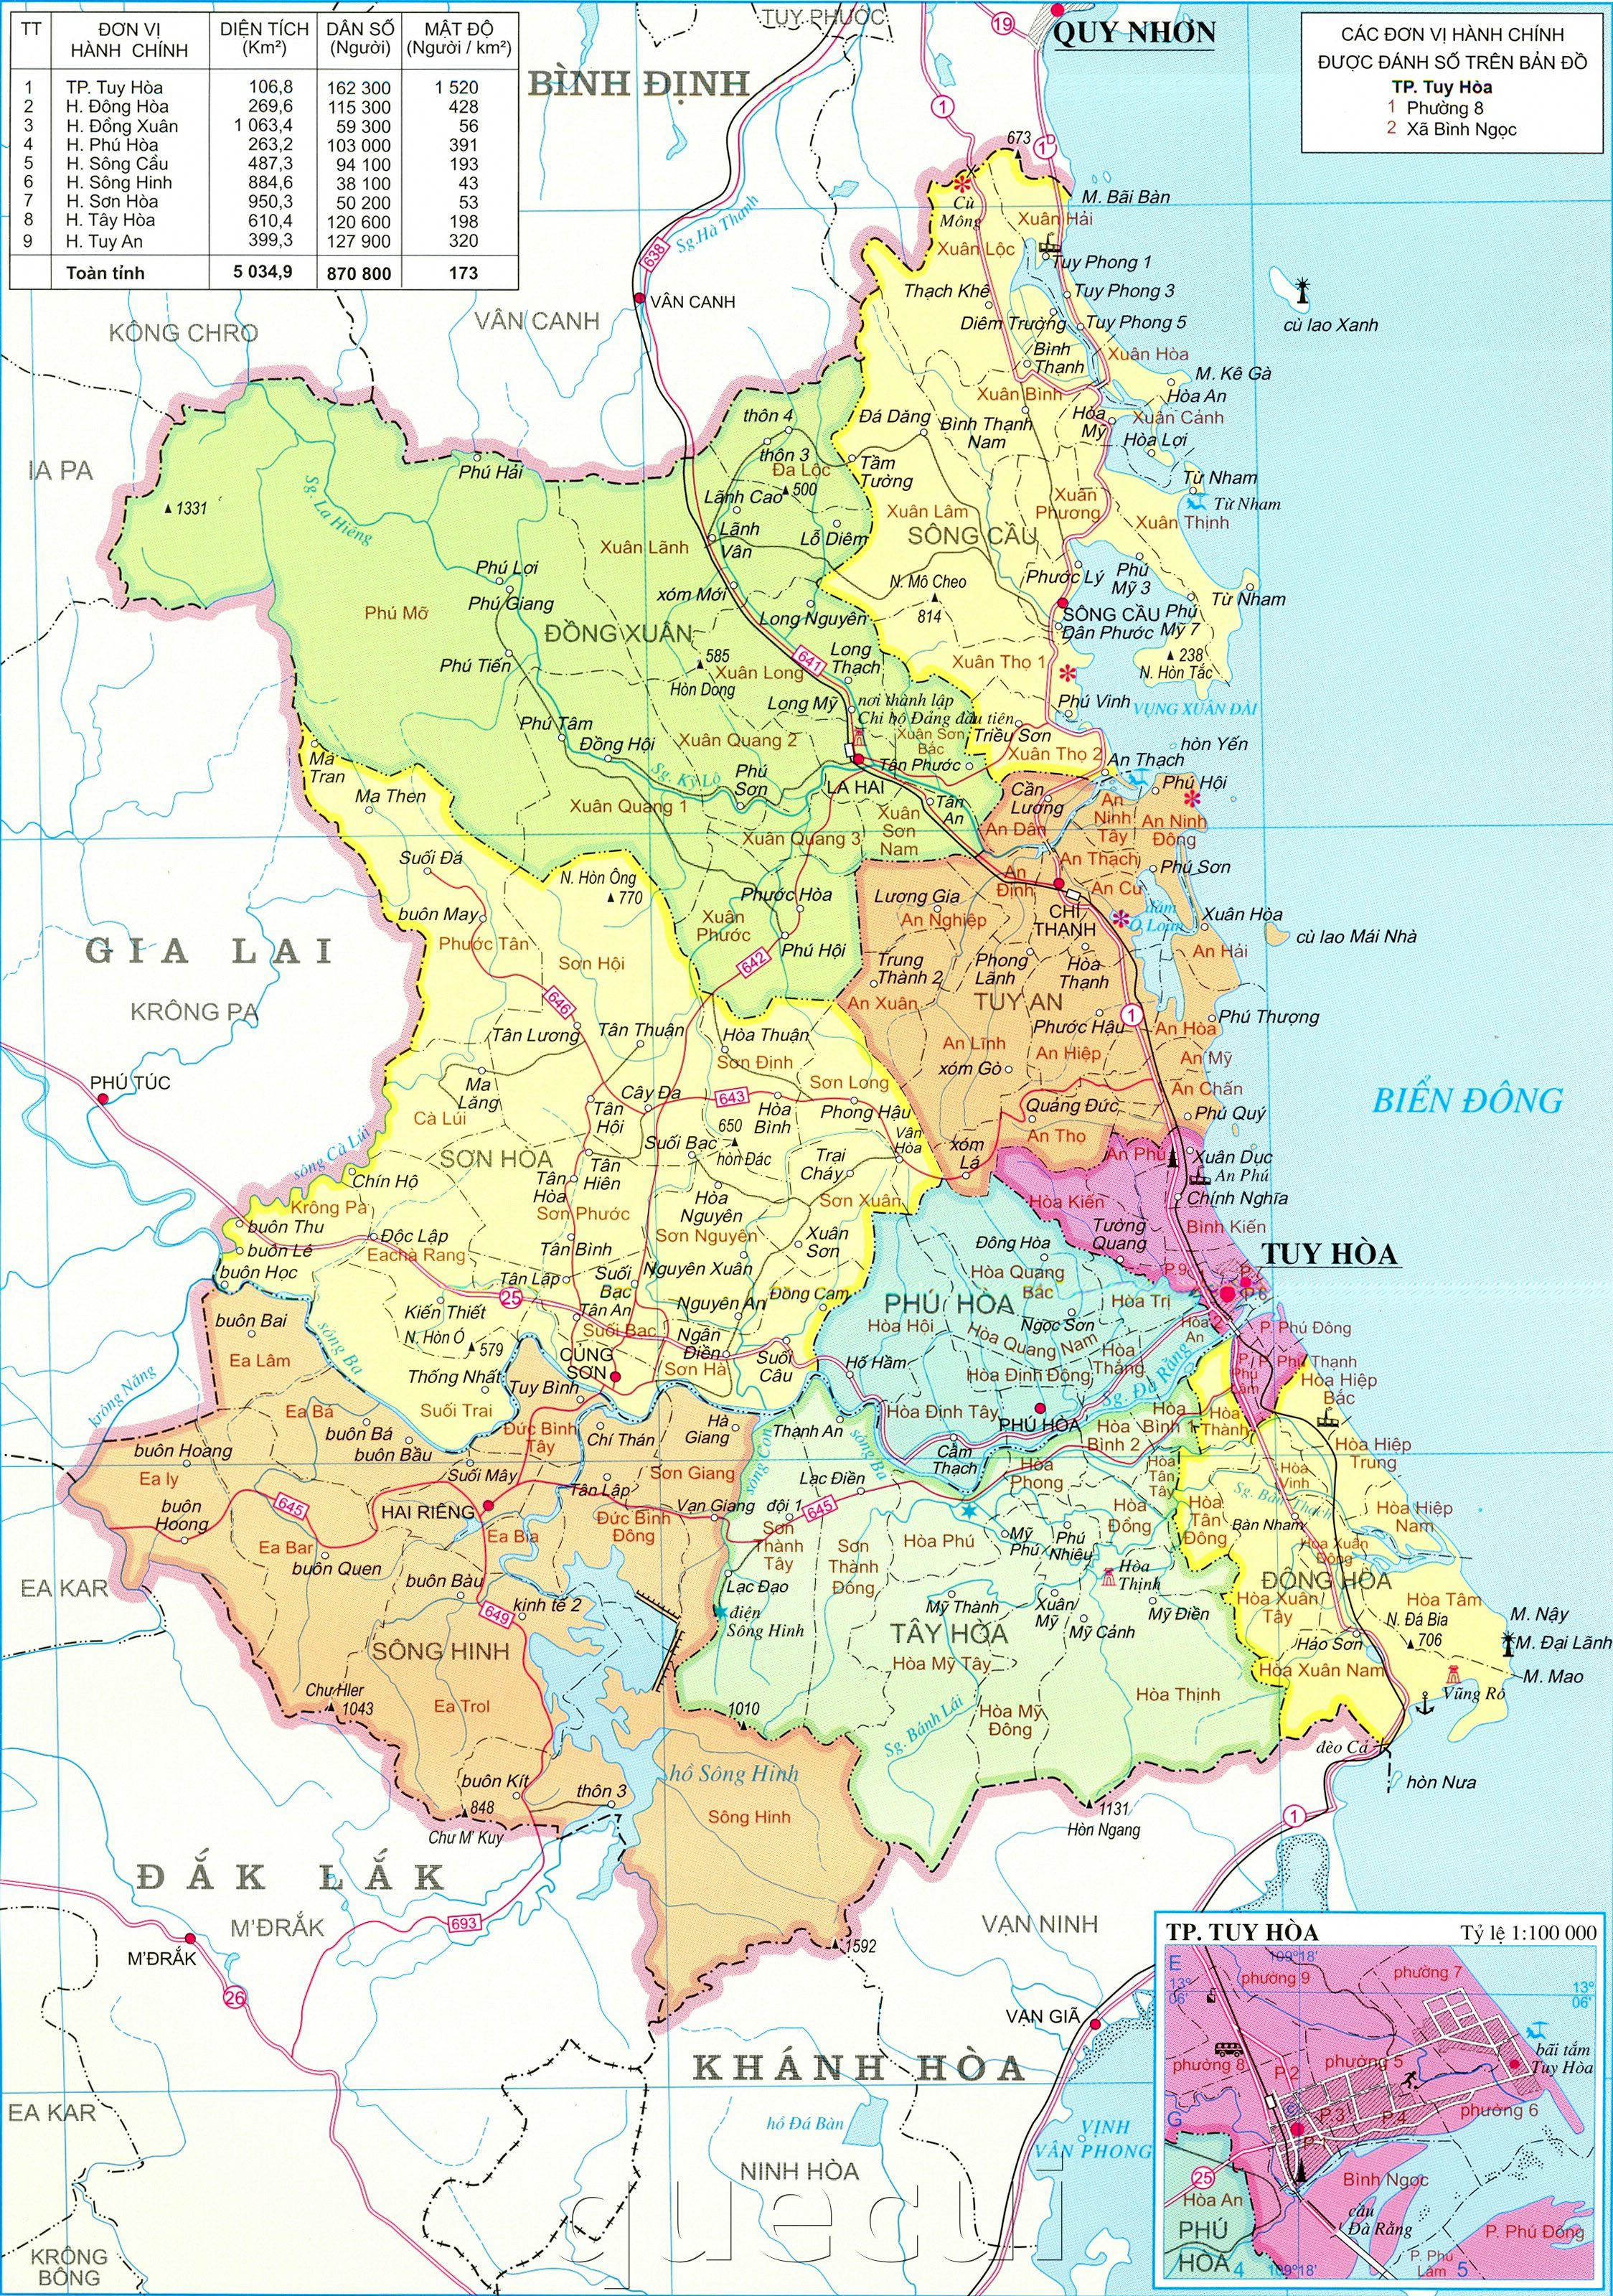 Với bản đồ hành chính Phú Yên cập nhật vào năm 2024, bạn sẽ có được cái nhìn toàn diện về các khu vực hành chính thuộc tỉnh. Điều này sẽ giúp cho việc tra cứu thông tin về các cơ quan chính quyền, công vụ hay dịch vụ công trở nên thuận tiện hơn.